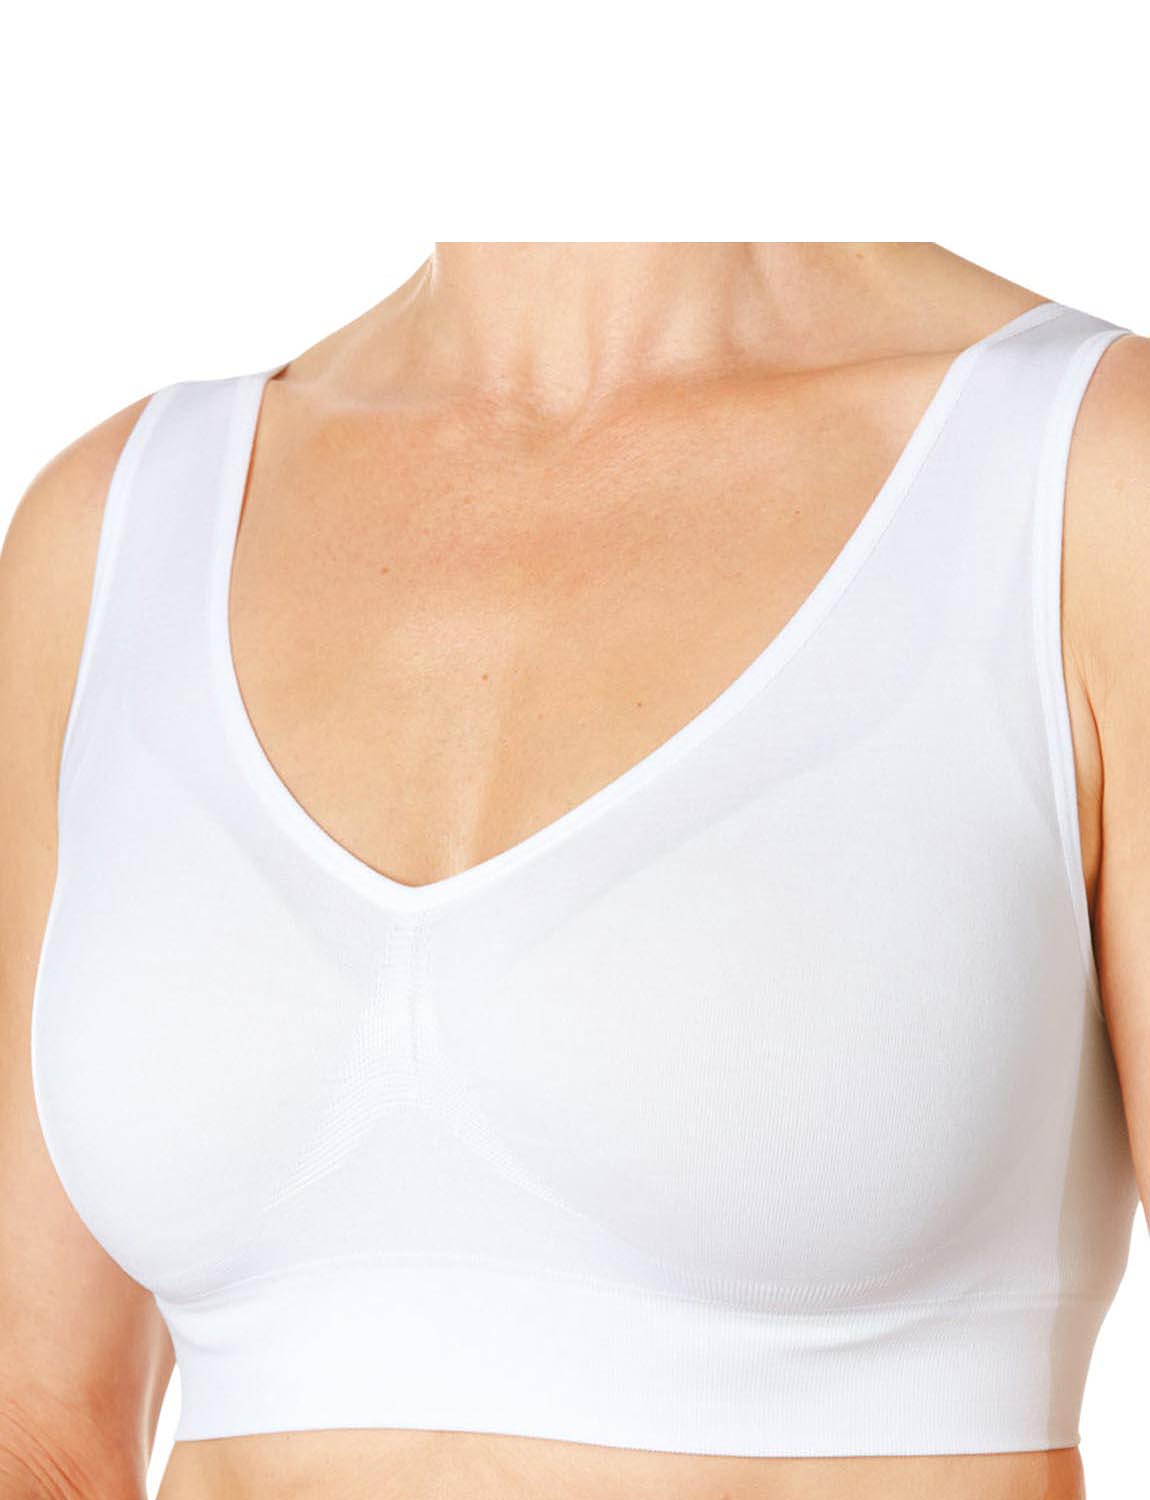 Women's comfort bra